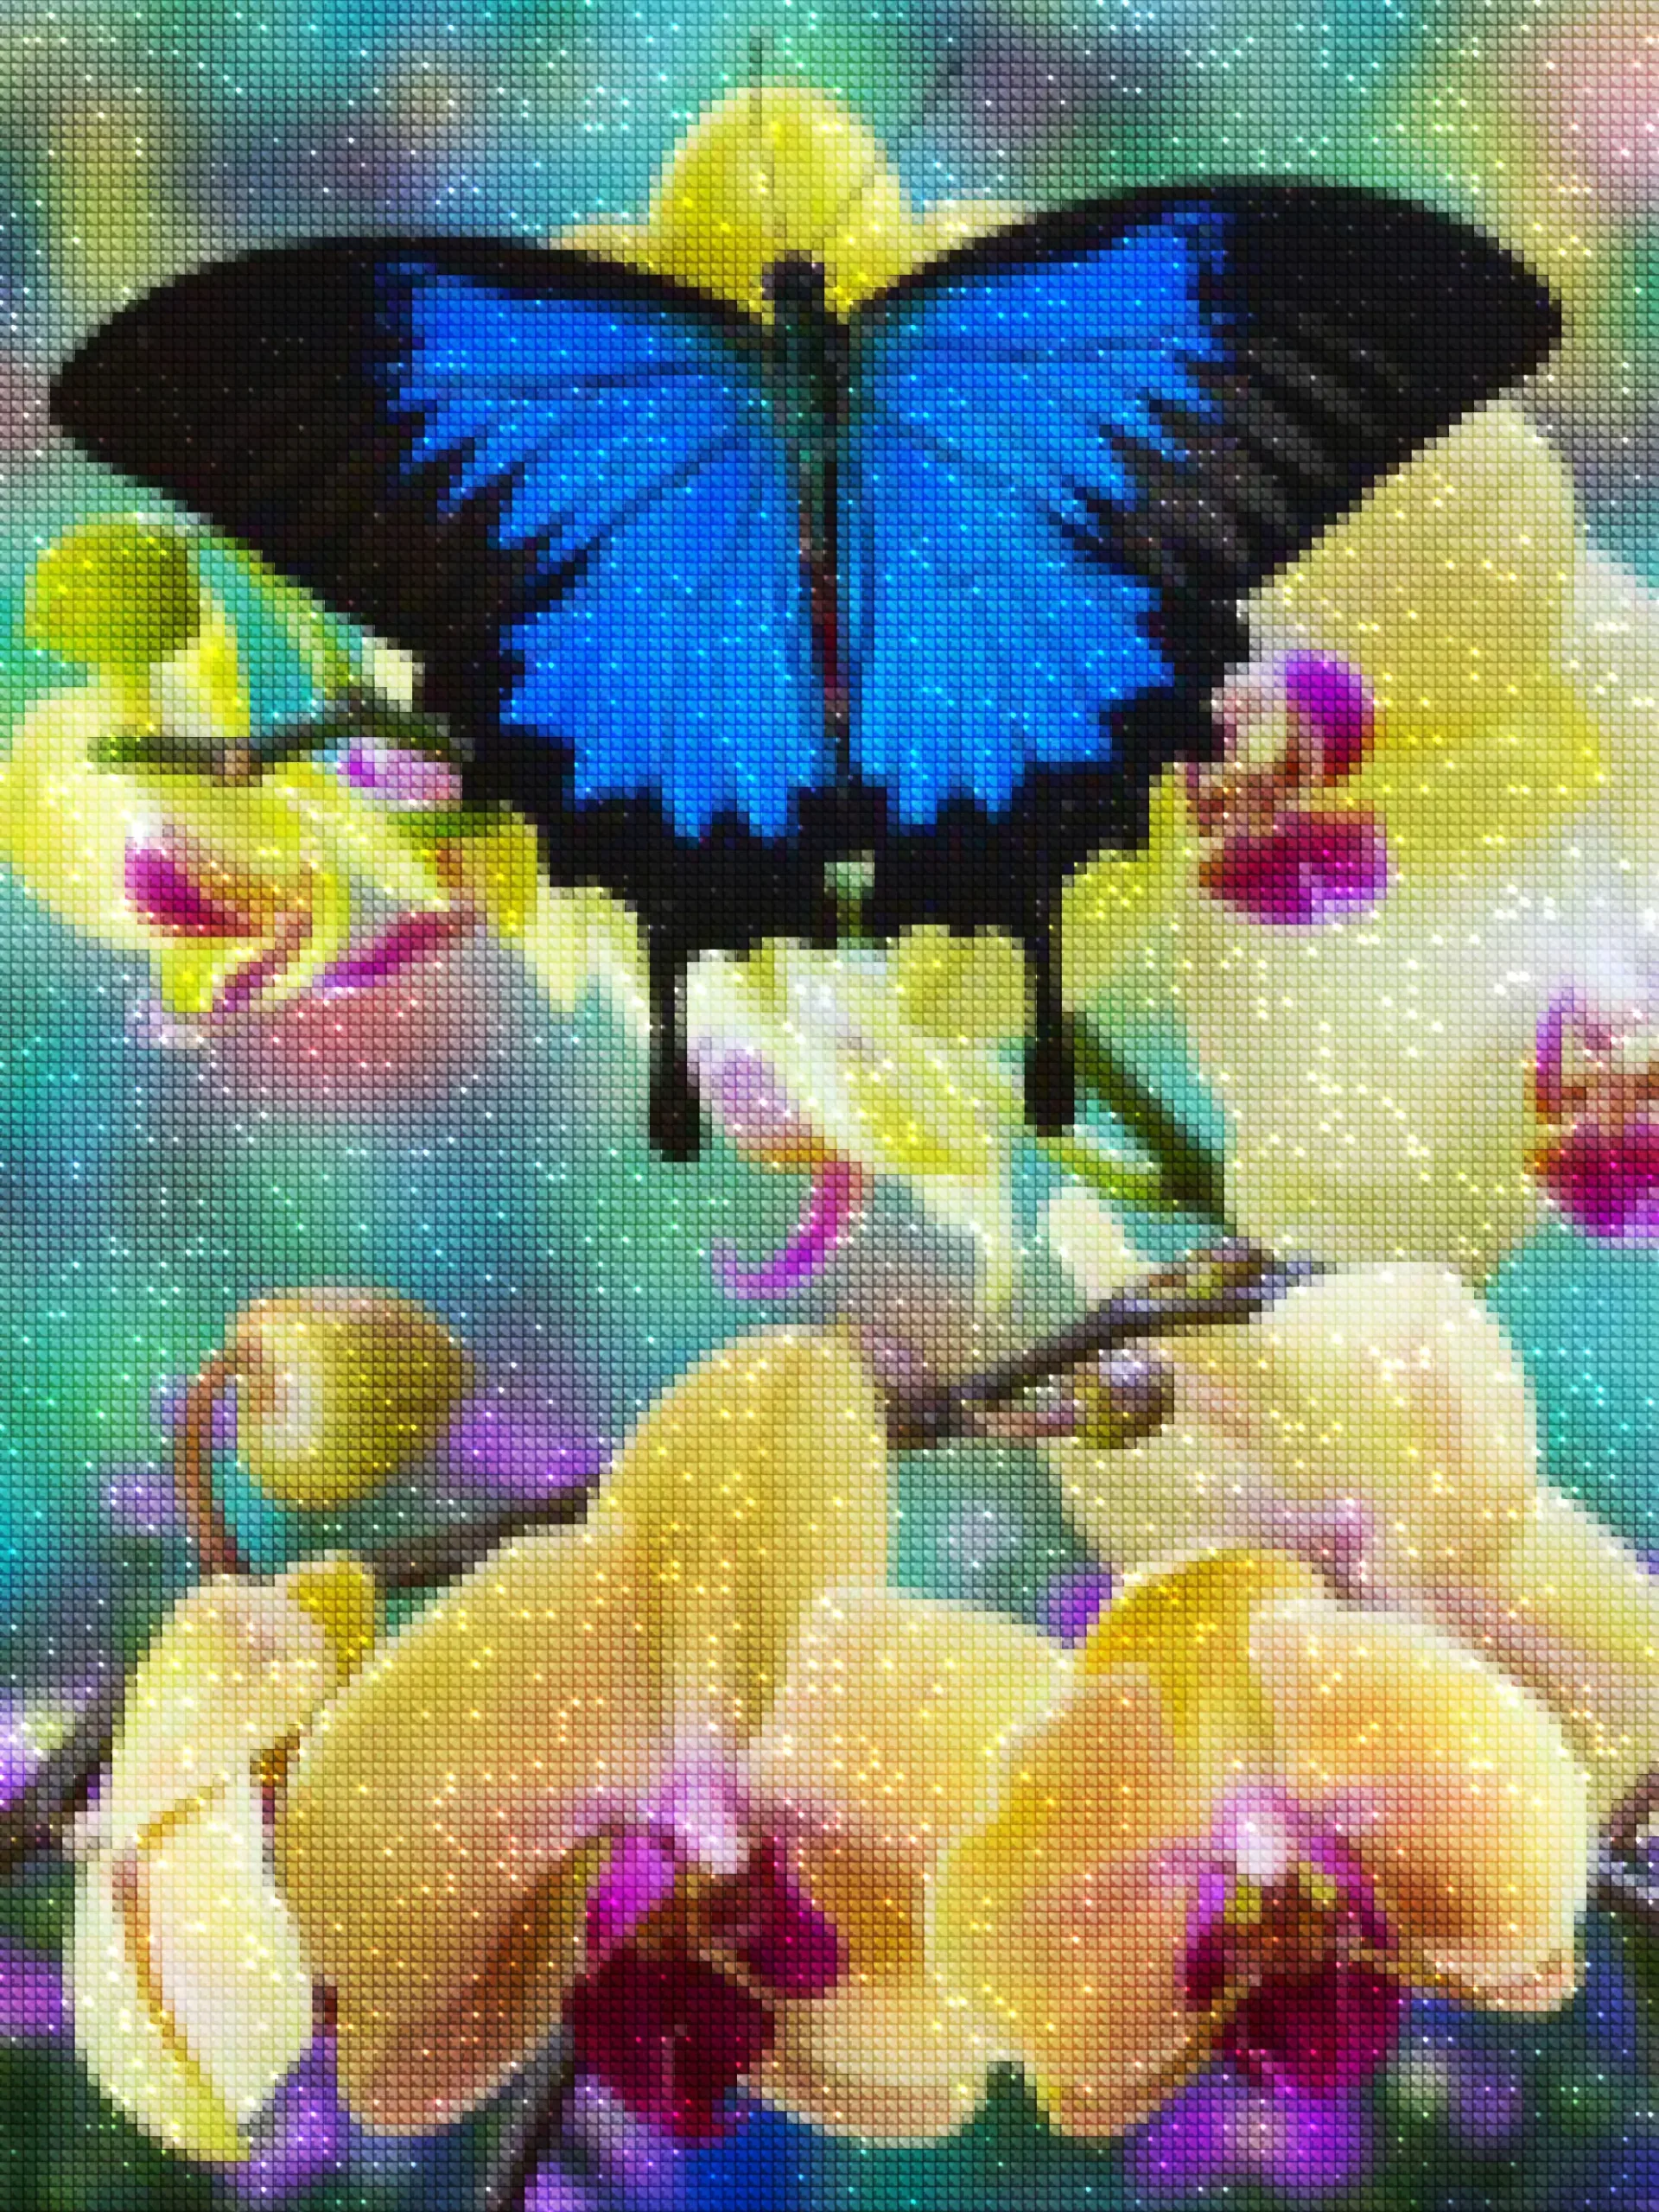 diamanter-veiviser-diamant-malesett-Natur-sommerfugl-Den blå sommerfuglen på Orchid-diamonds.webp